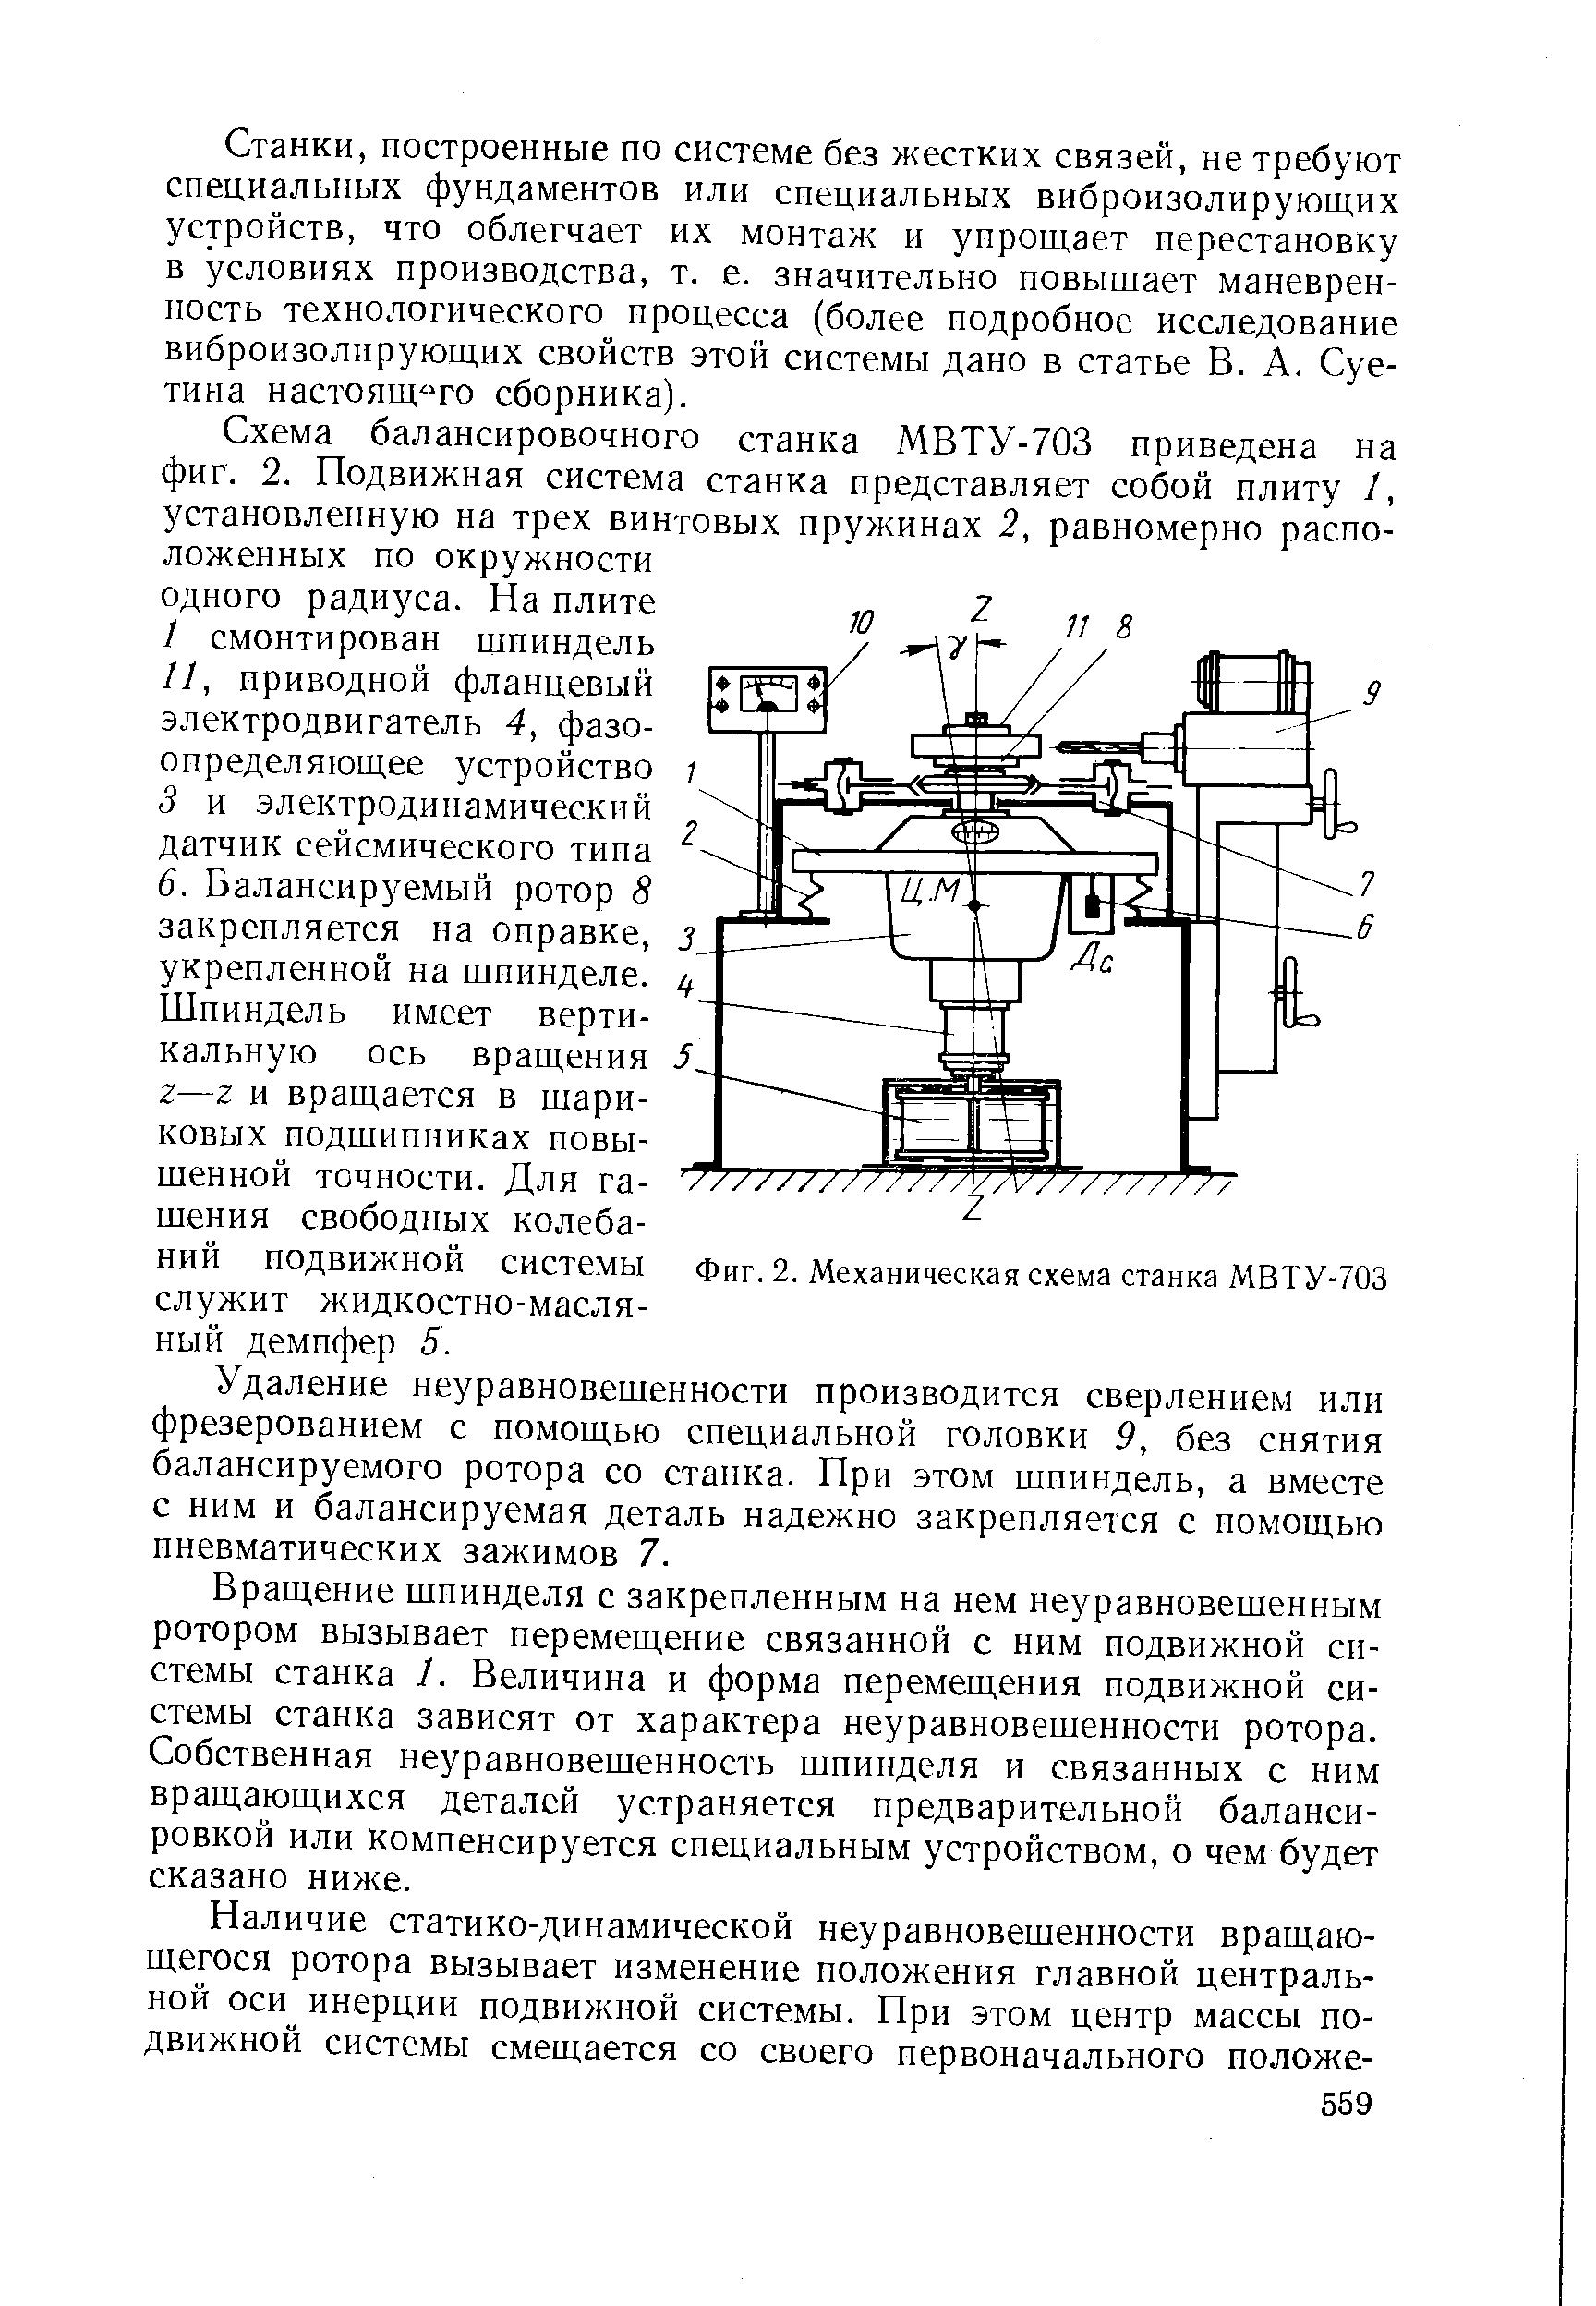 Фиг. 2. Механическая схема станка МВТУ-703
